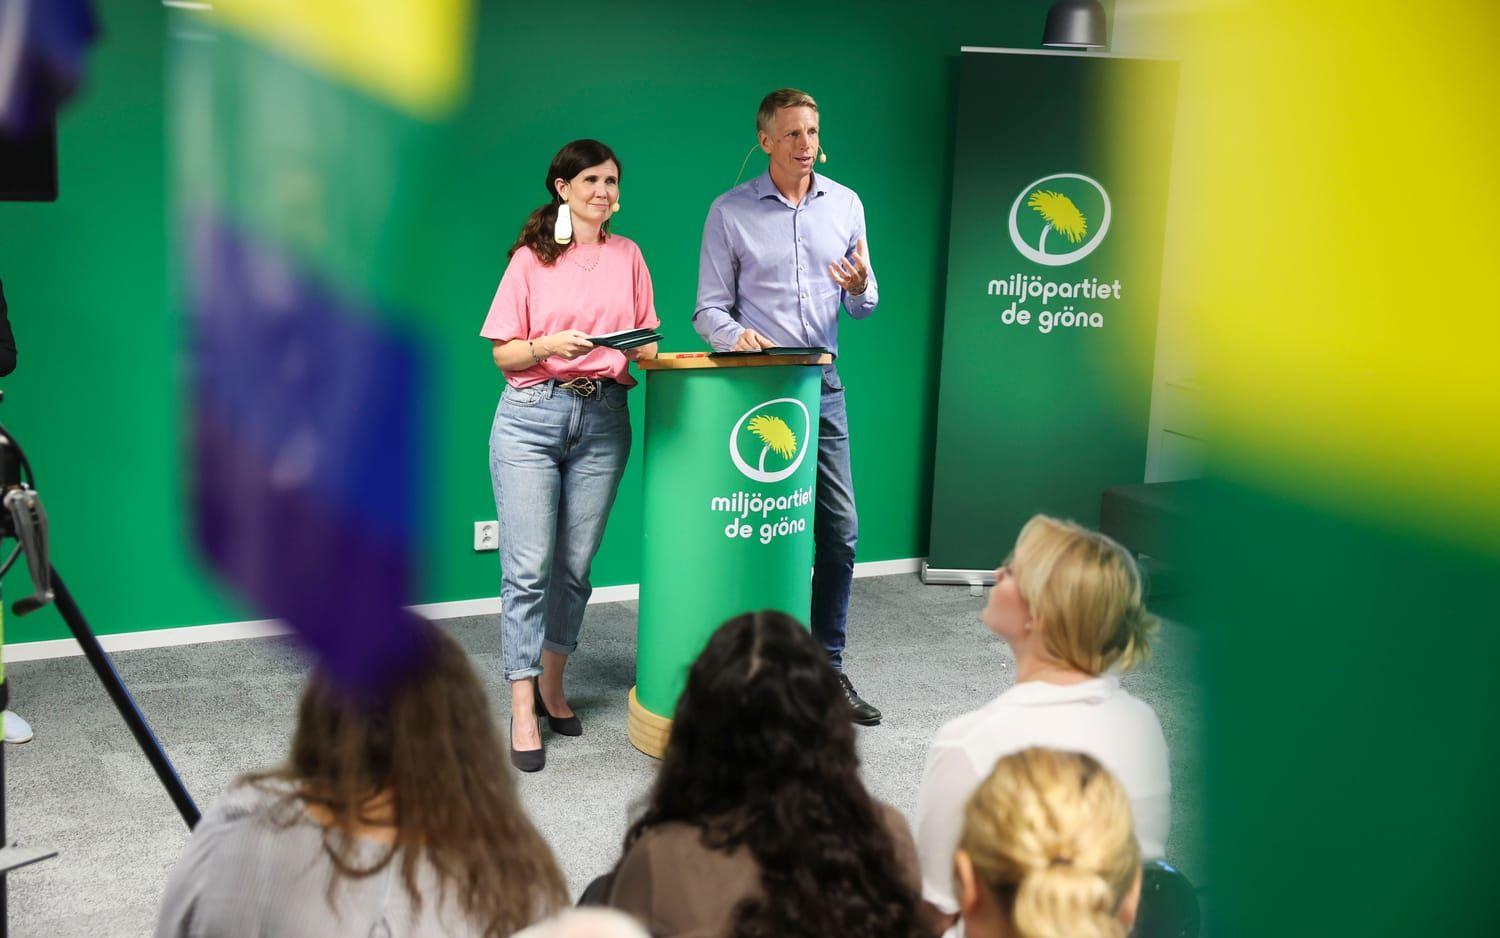 Miljöpartiets språkrör Märta Stenevi och Per Bolund sommartalade på partikansliet i Stockholm.